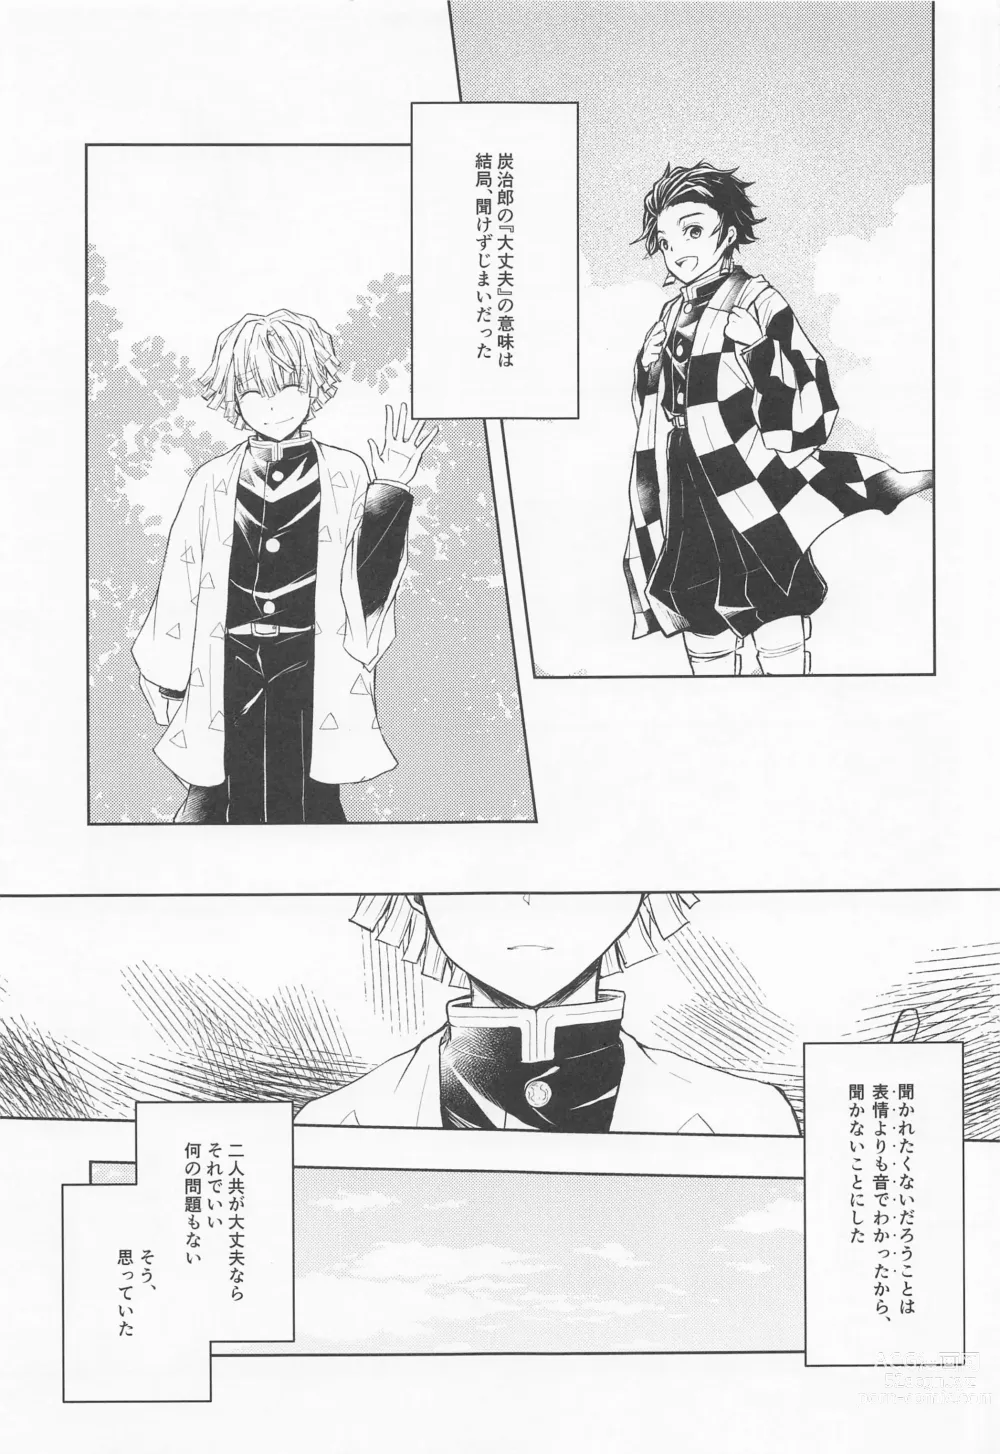 Page 6 of doujinshi Ai Mite no